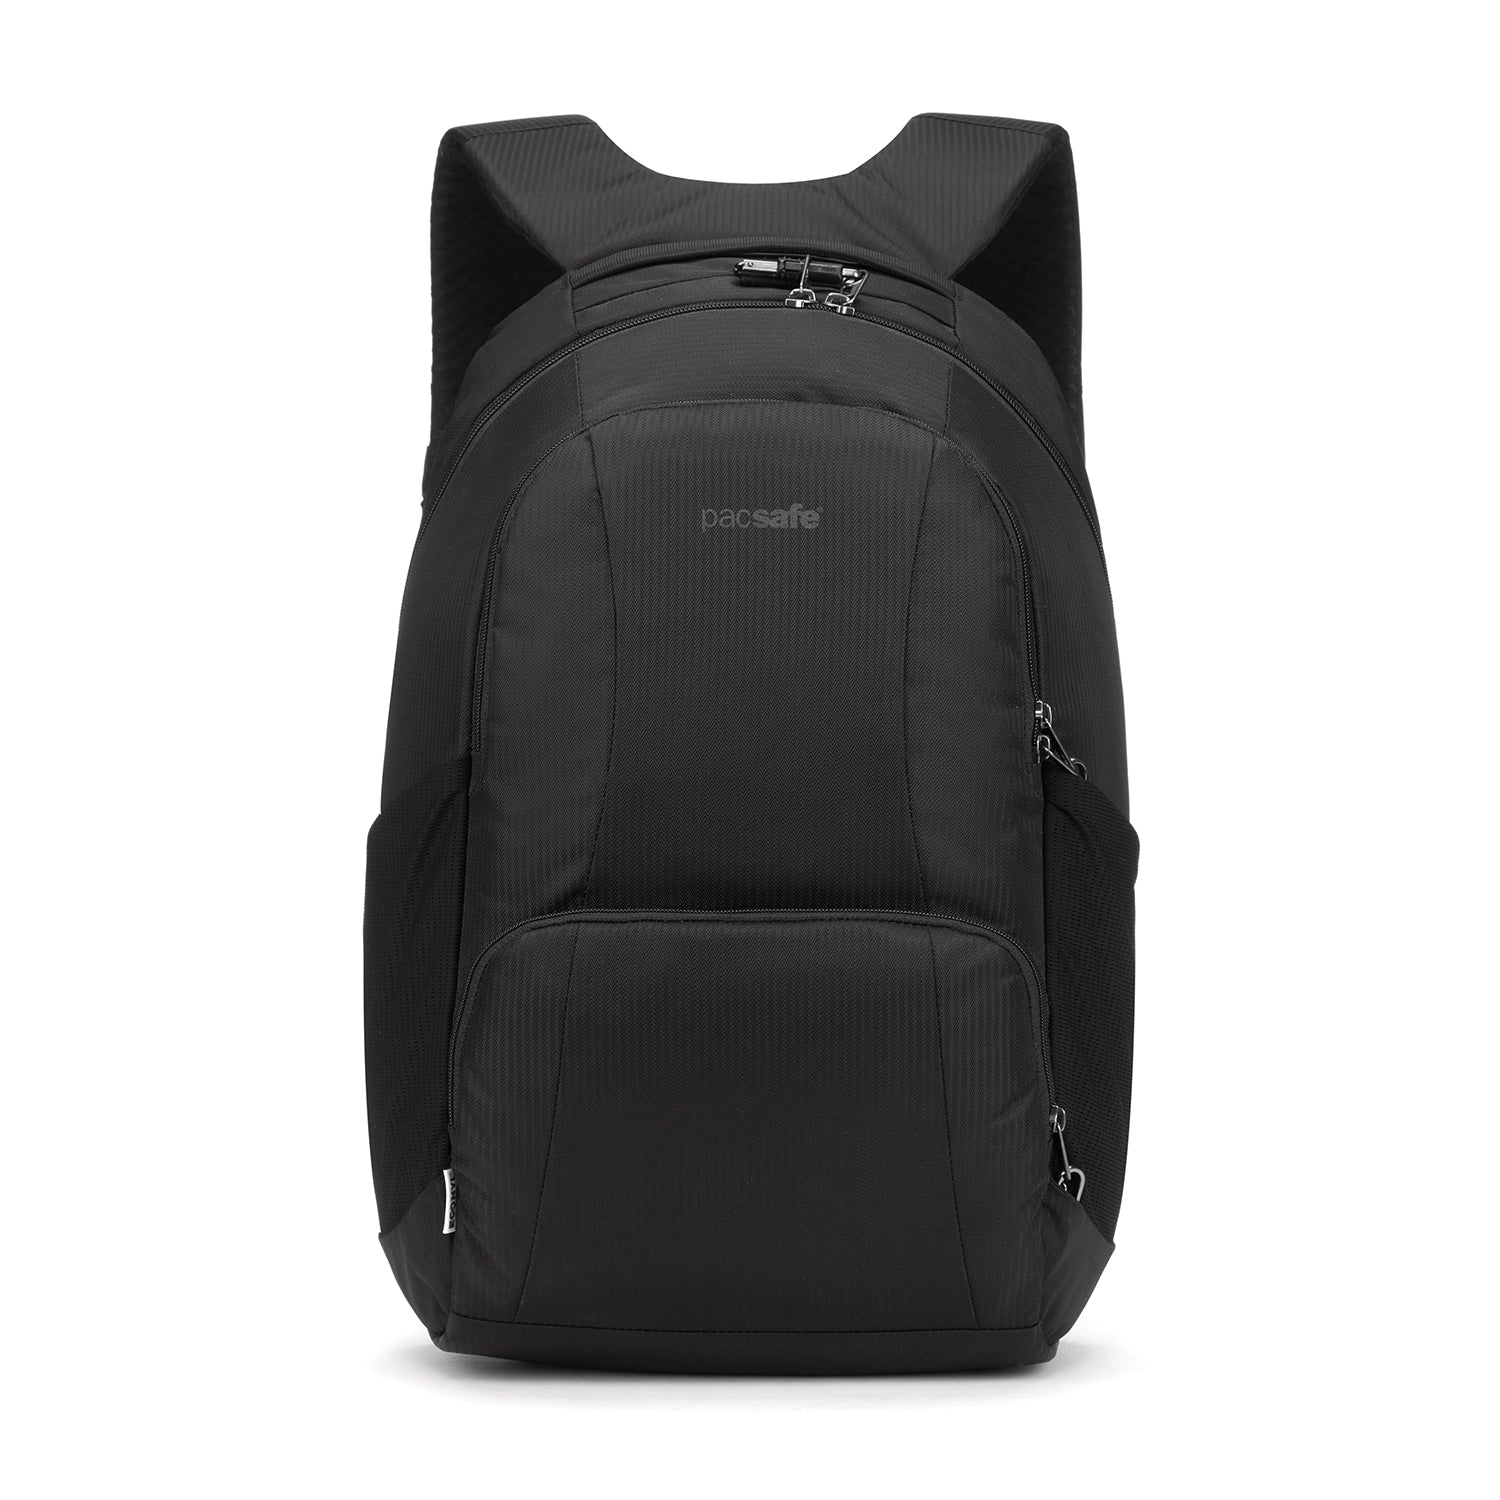 Pacsafe - LS450 Backpack - Black